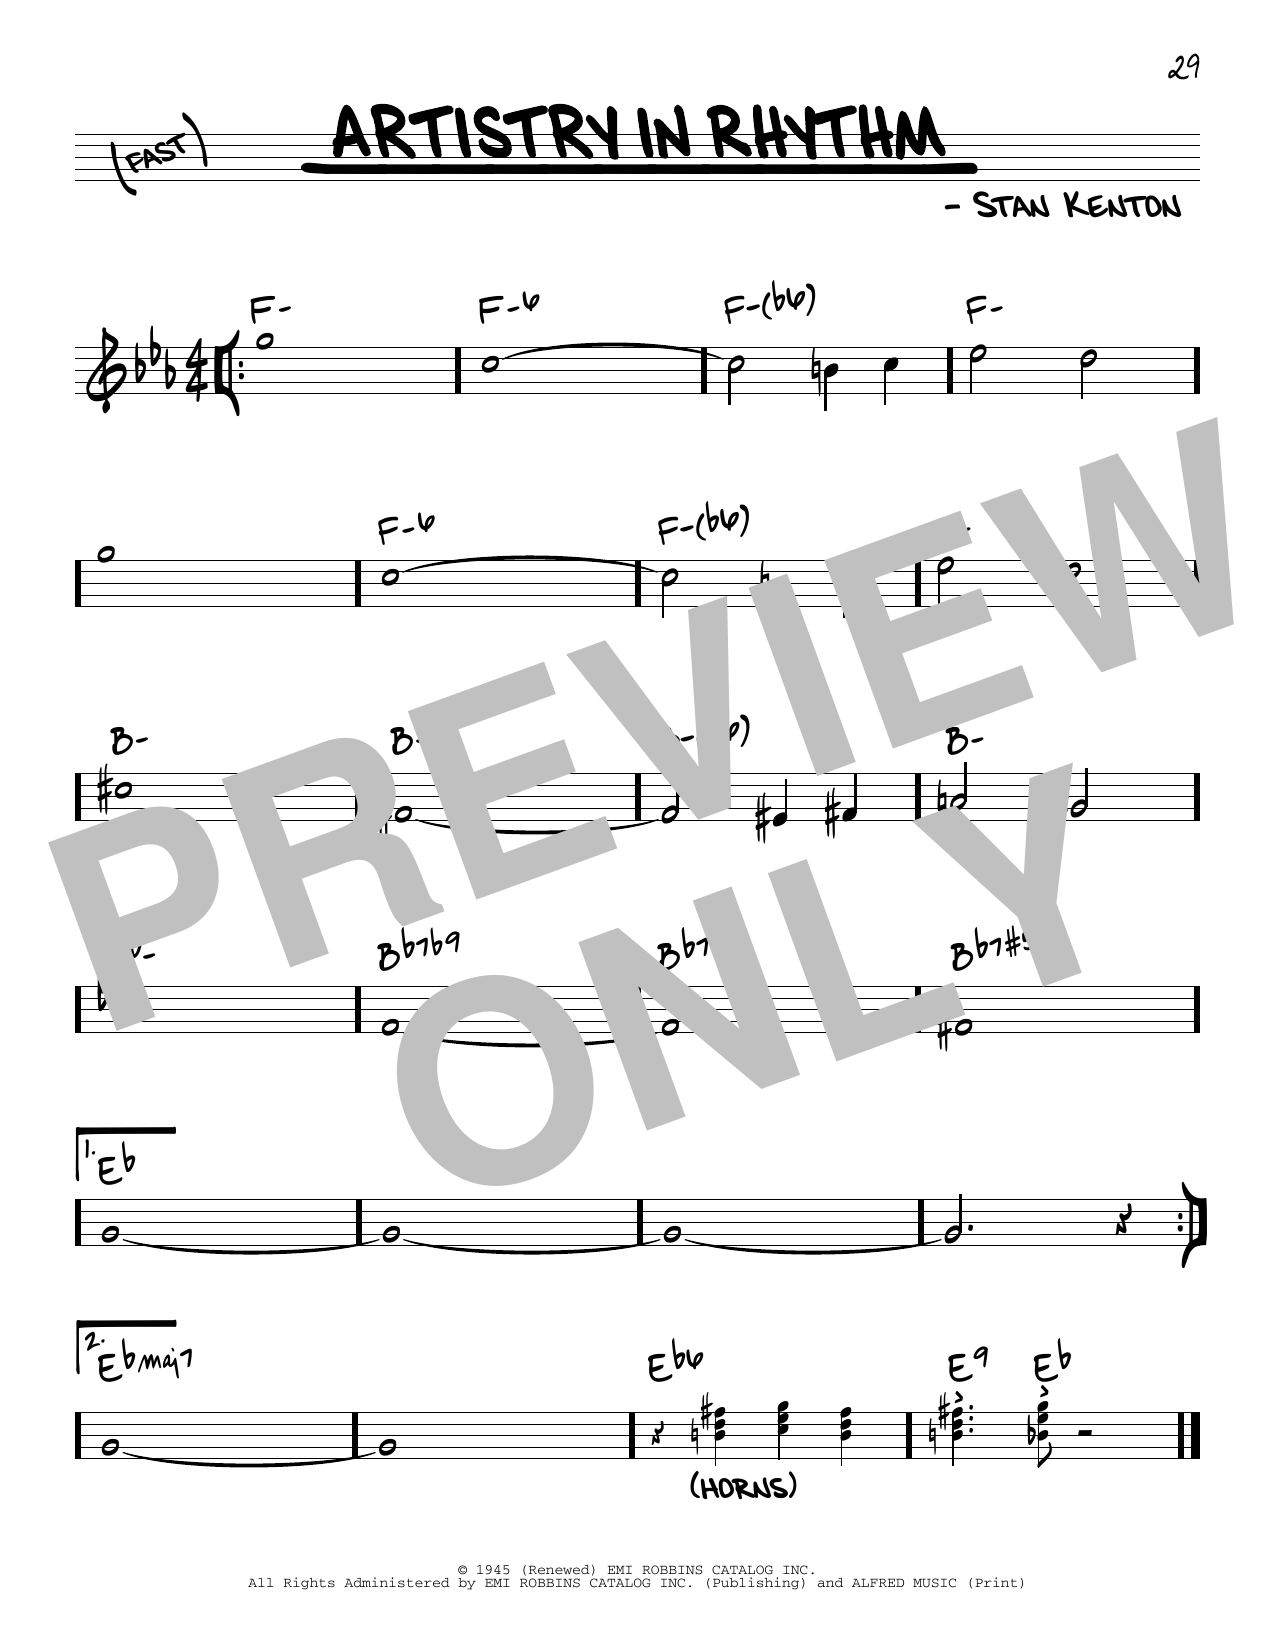 Download Stan Kenton Artistry In Rhythm Sheet Music